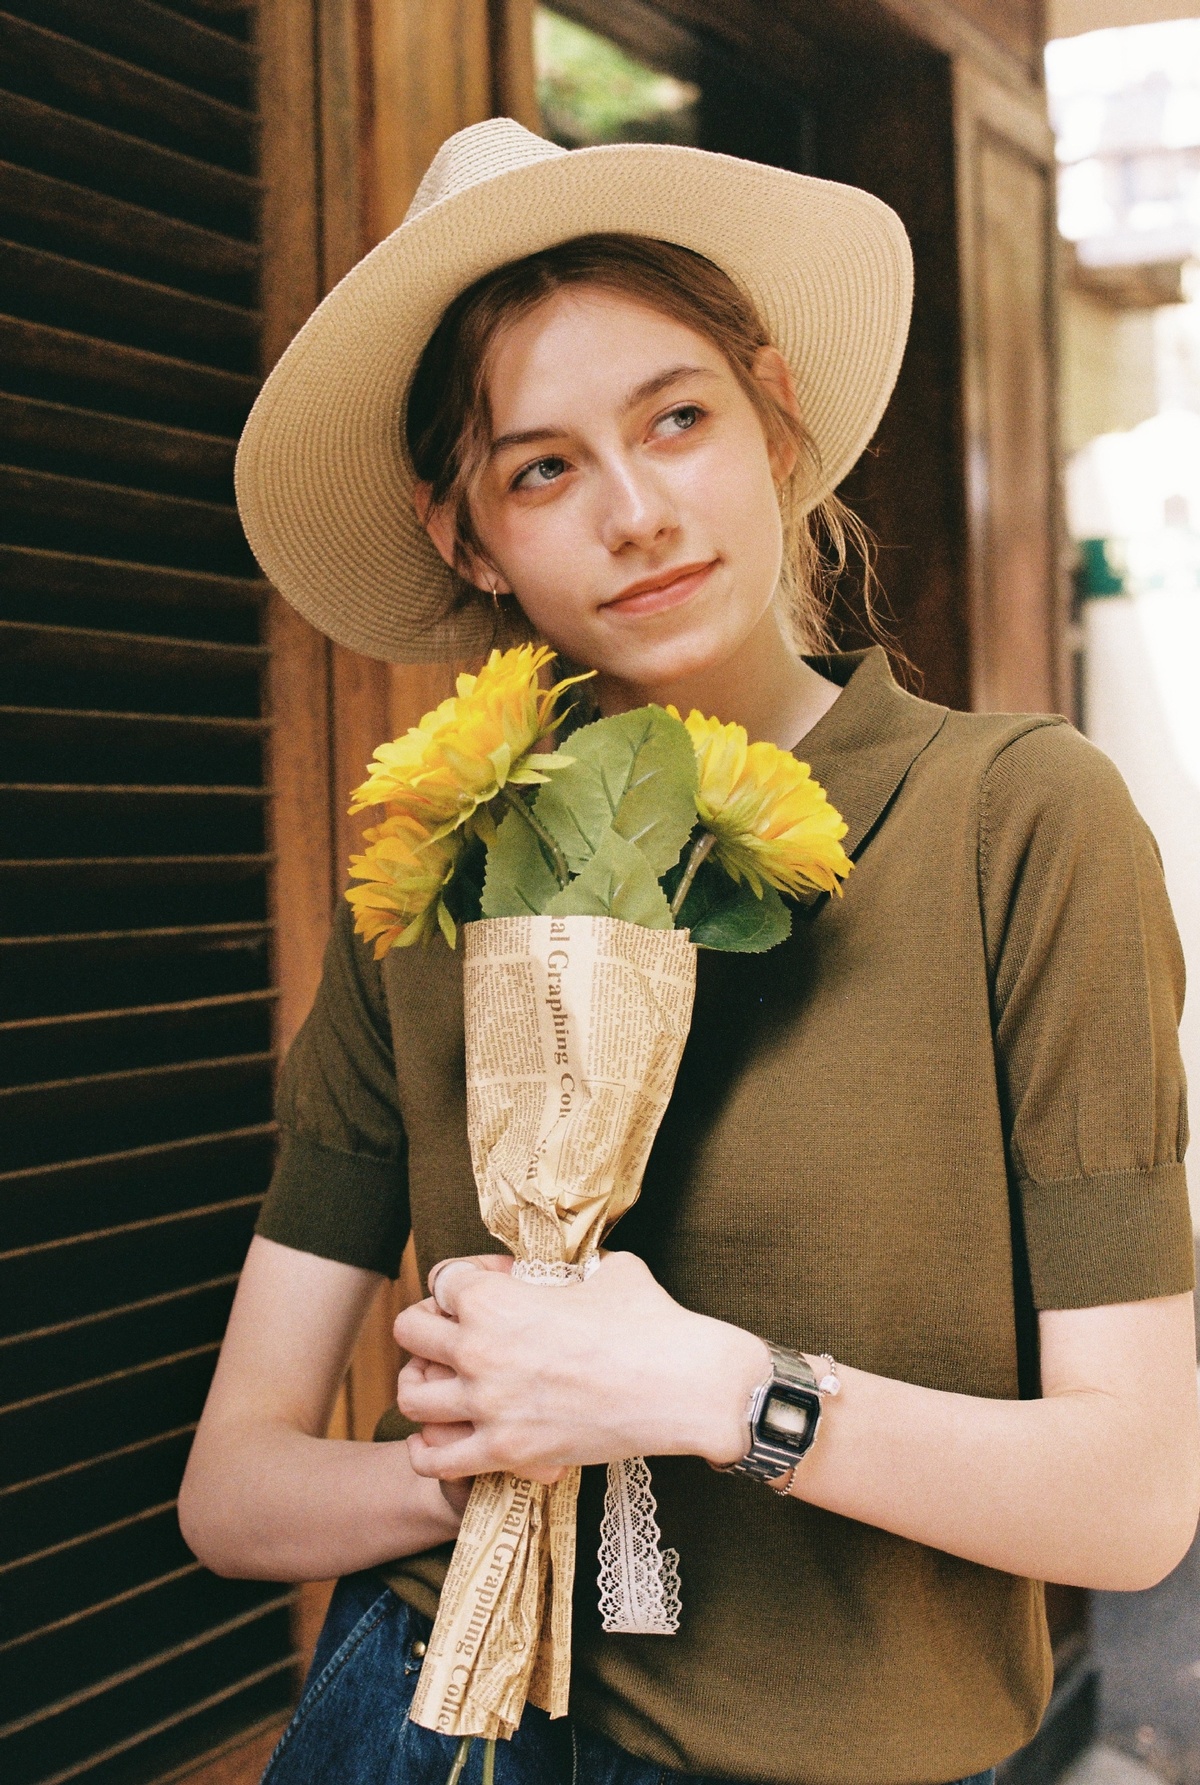 一位戴帽子的小姐拿着一束黄色的花